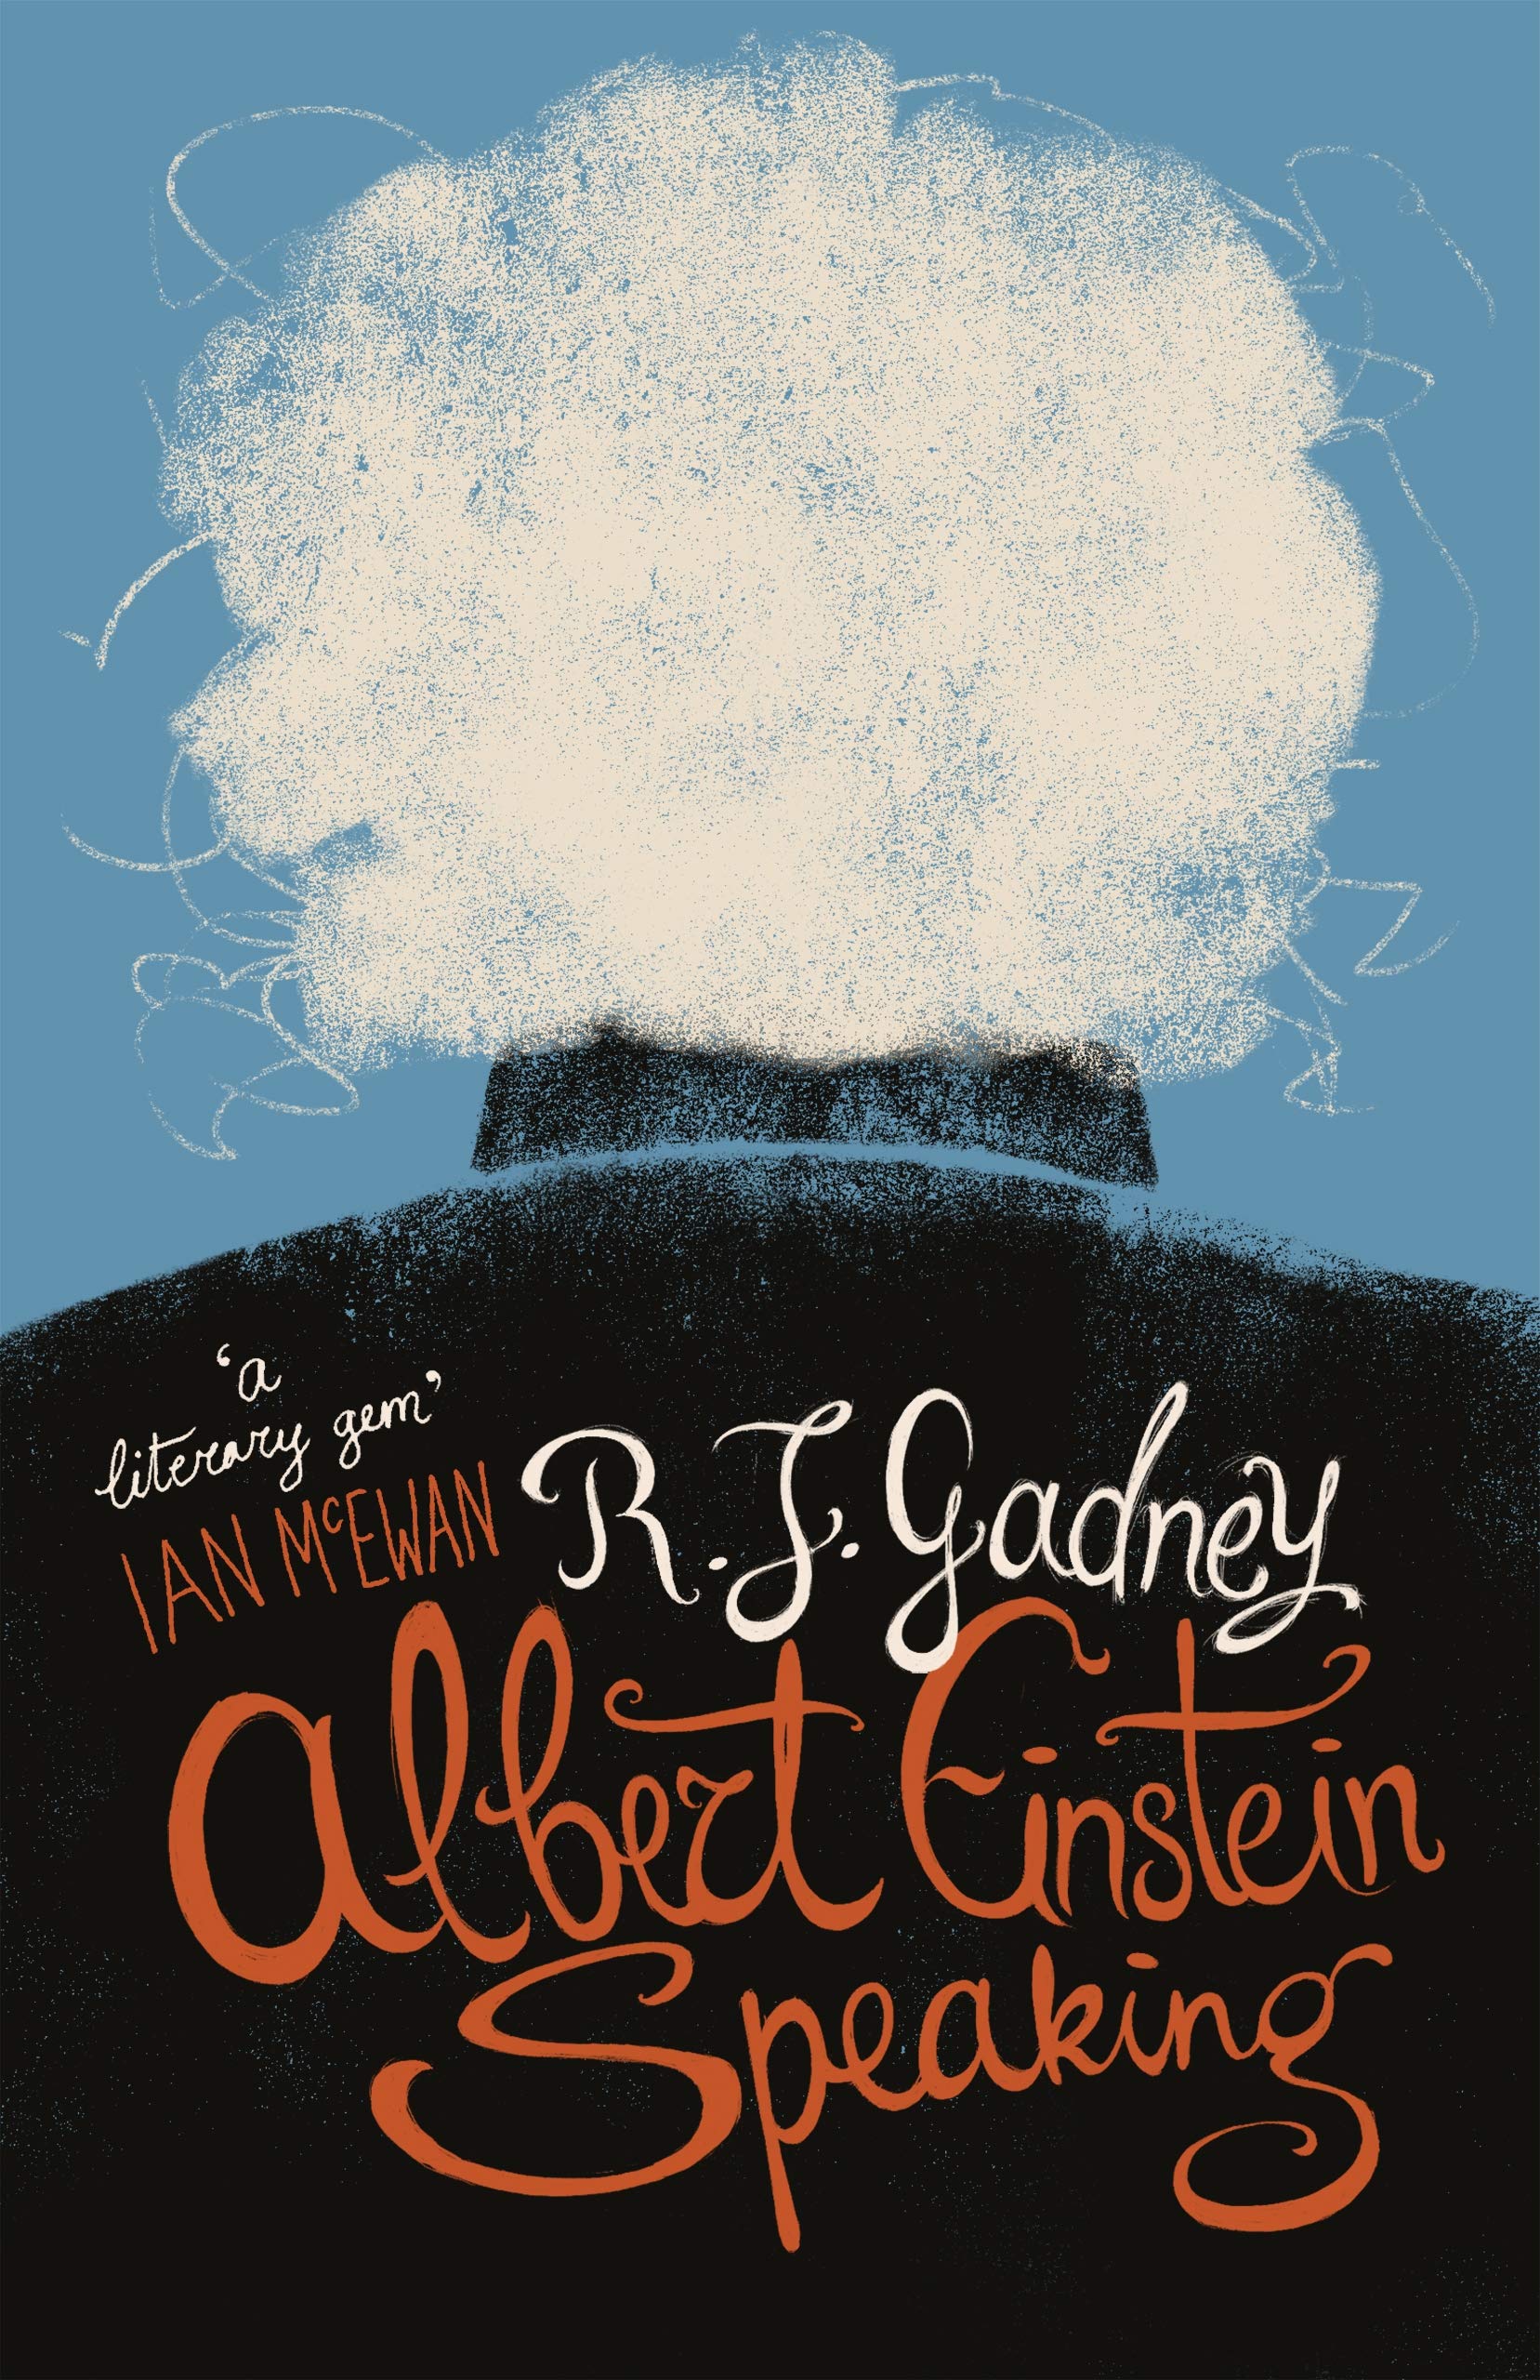 Albert Einstein Speaking | R.J. Gadney